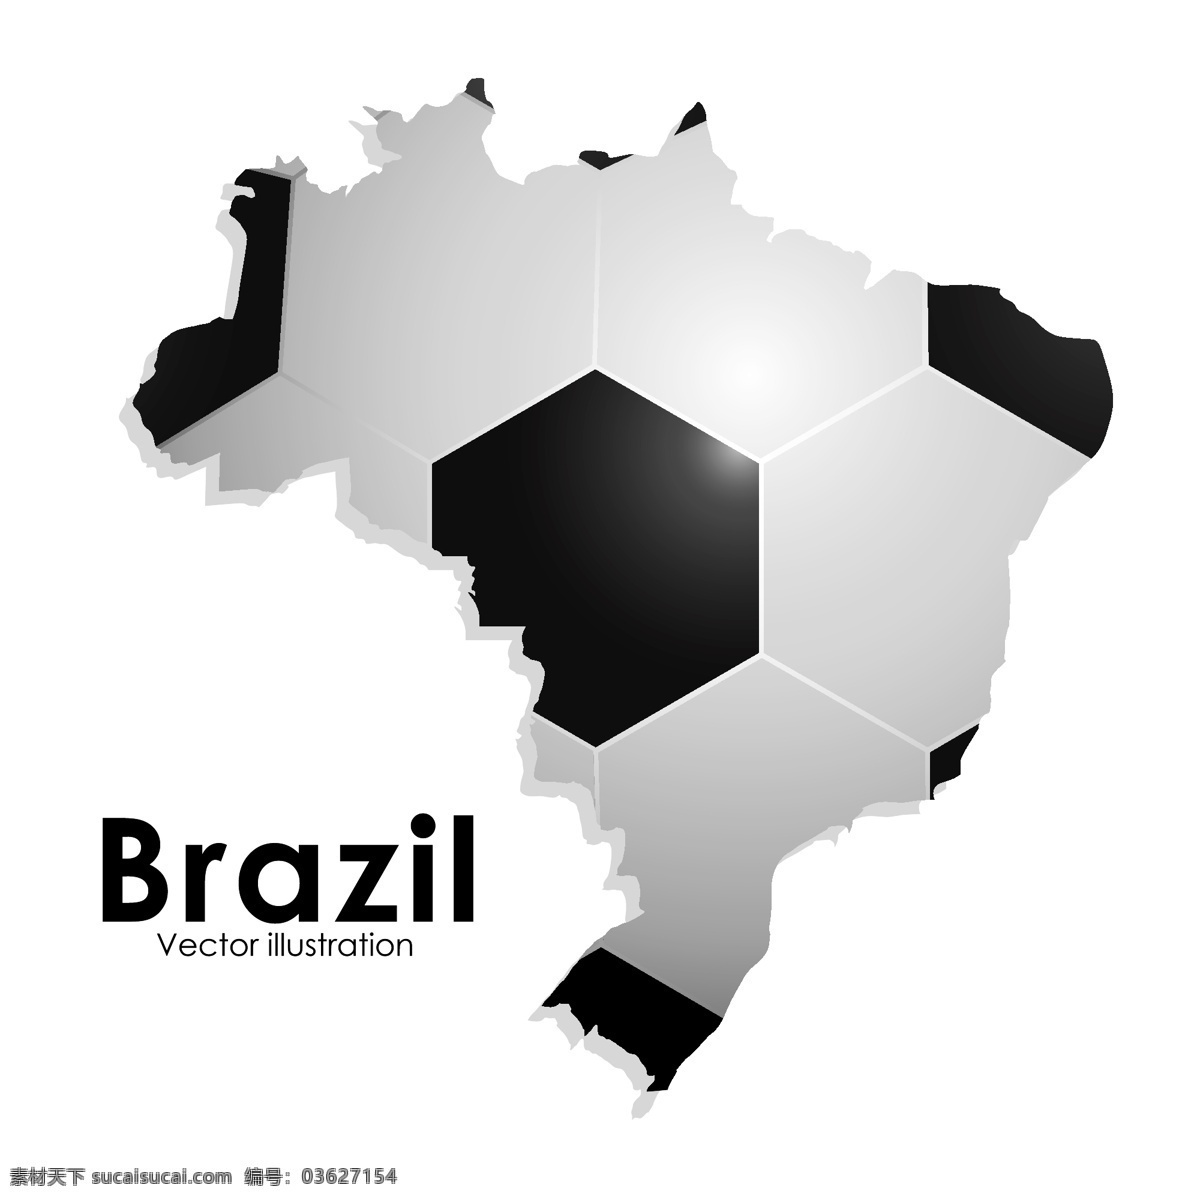 创意 巴西 足球 海报 矢量图 世界杯 体育运动 矢量 巴西地图